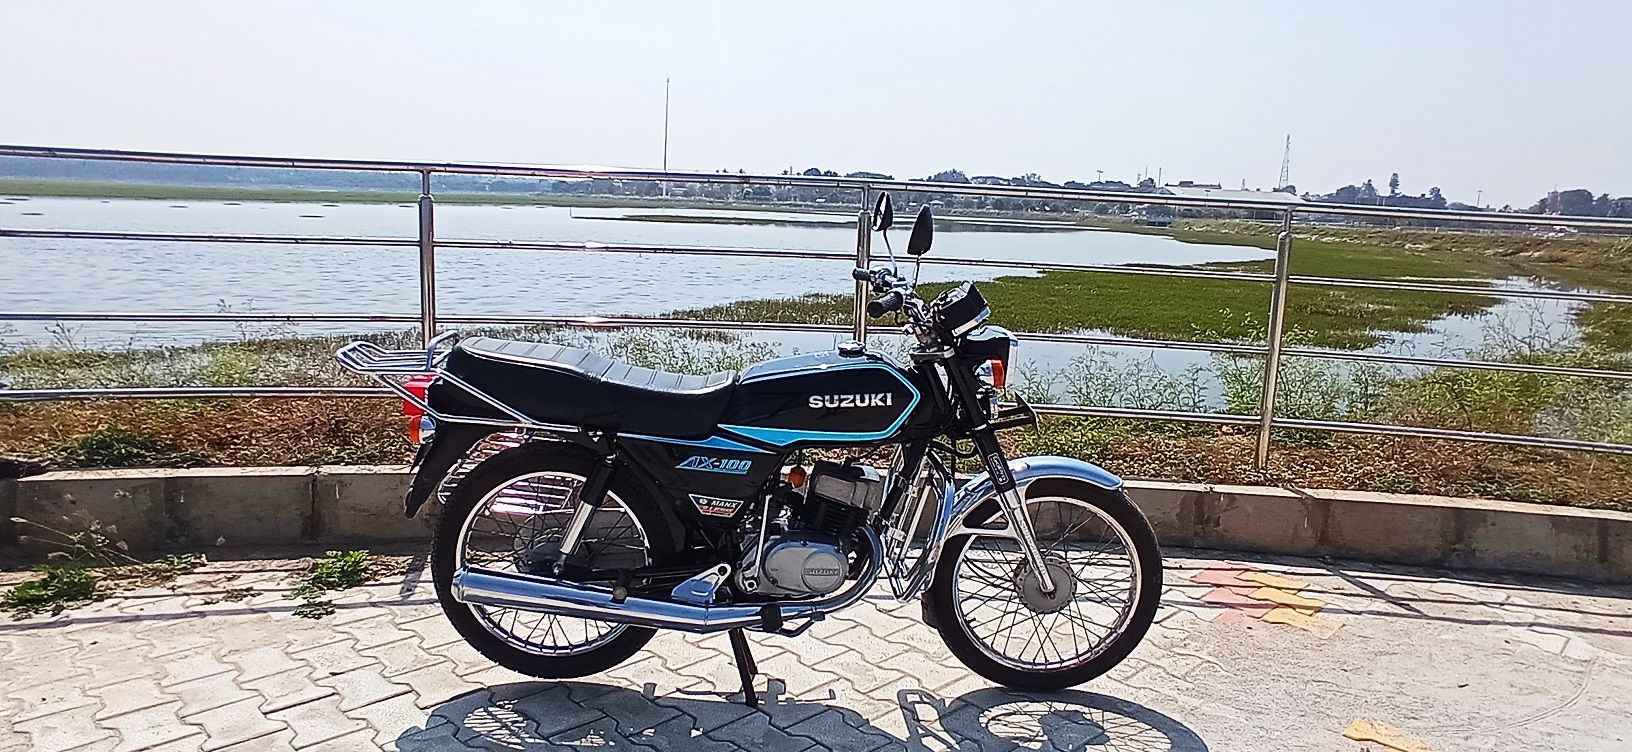 1983 Suzuki AX 100_Arvind Reddy_Made in Japan_05